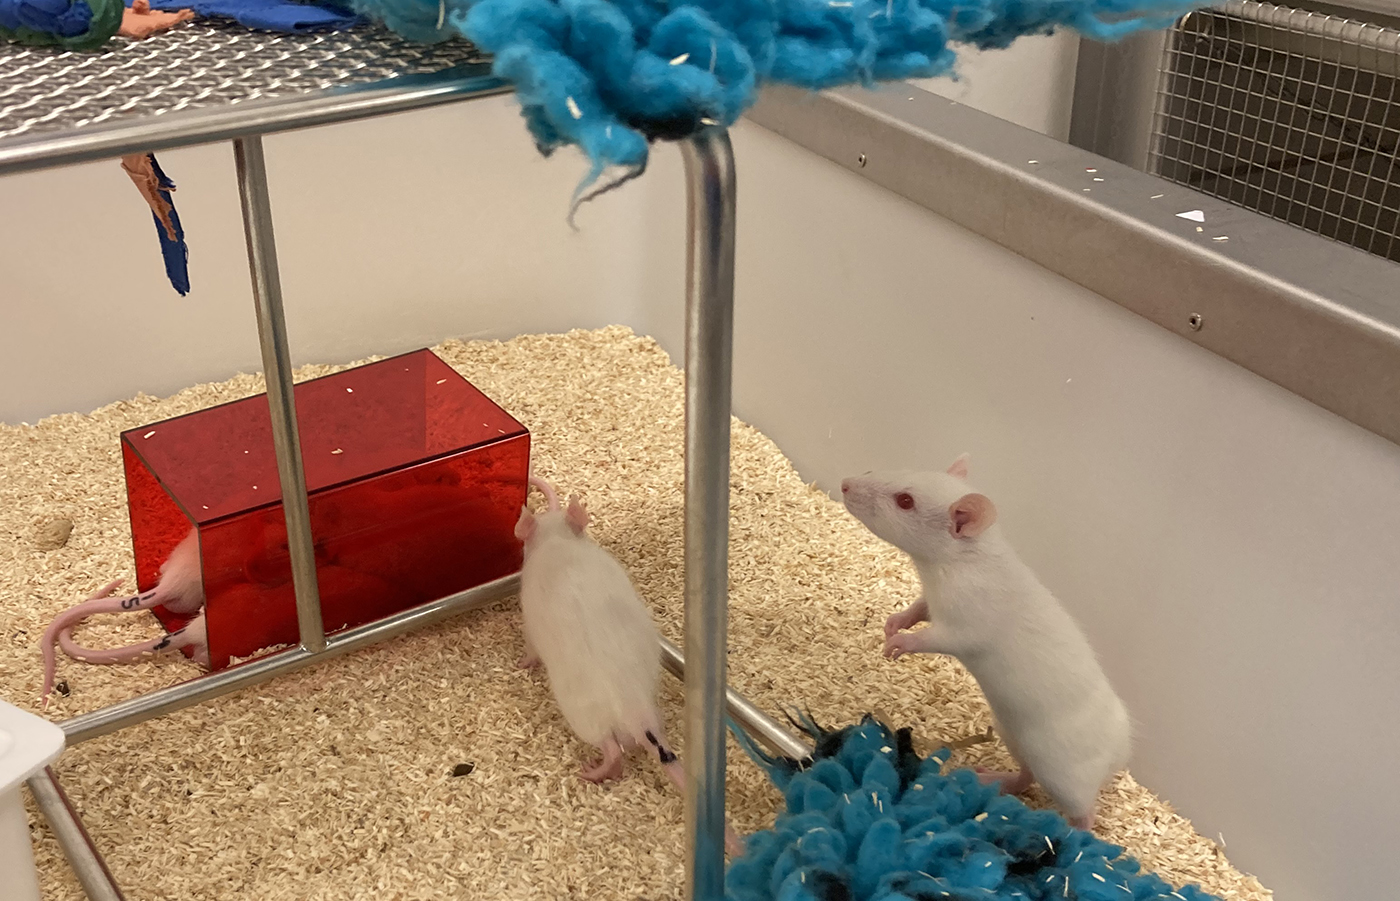 Vita råttor i en öppen låda springer runt i strö bland klätterställningar, ett rött hus i plast och tygstycken.